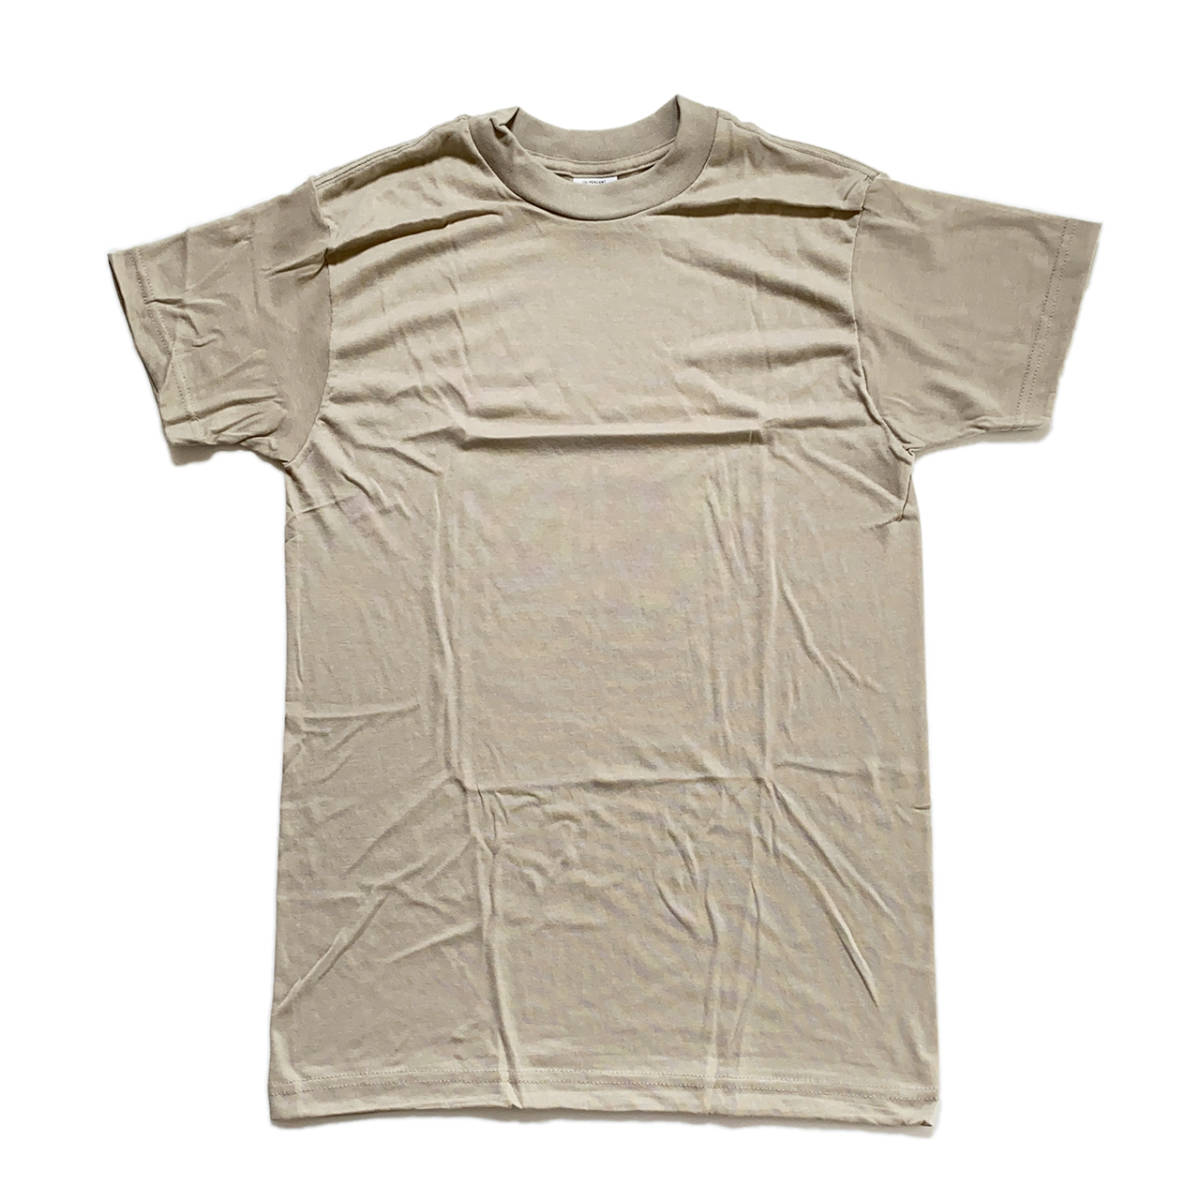  вооруженные силы США оригинал неиспользуемый товар одноцветный 3 упаковка футболка S Sand SMALL скорость .MOISTURE WICKING America армия USA производства милитари армия предмет / новый товар полиэстер не использовался DSCP